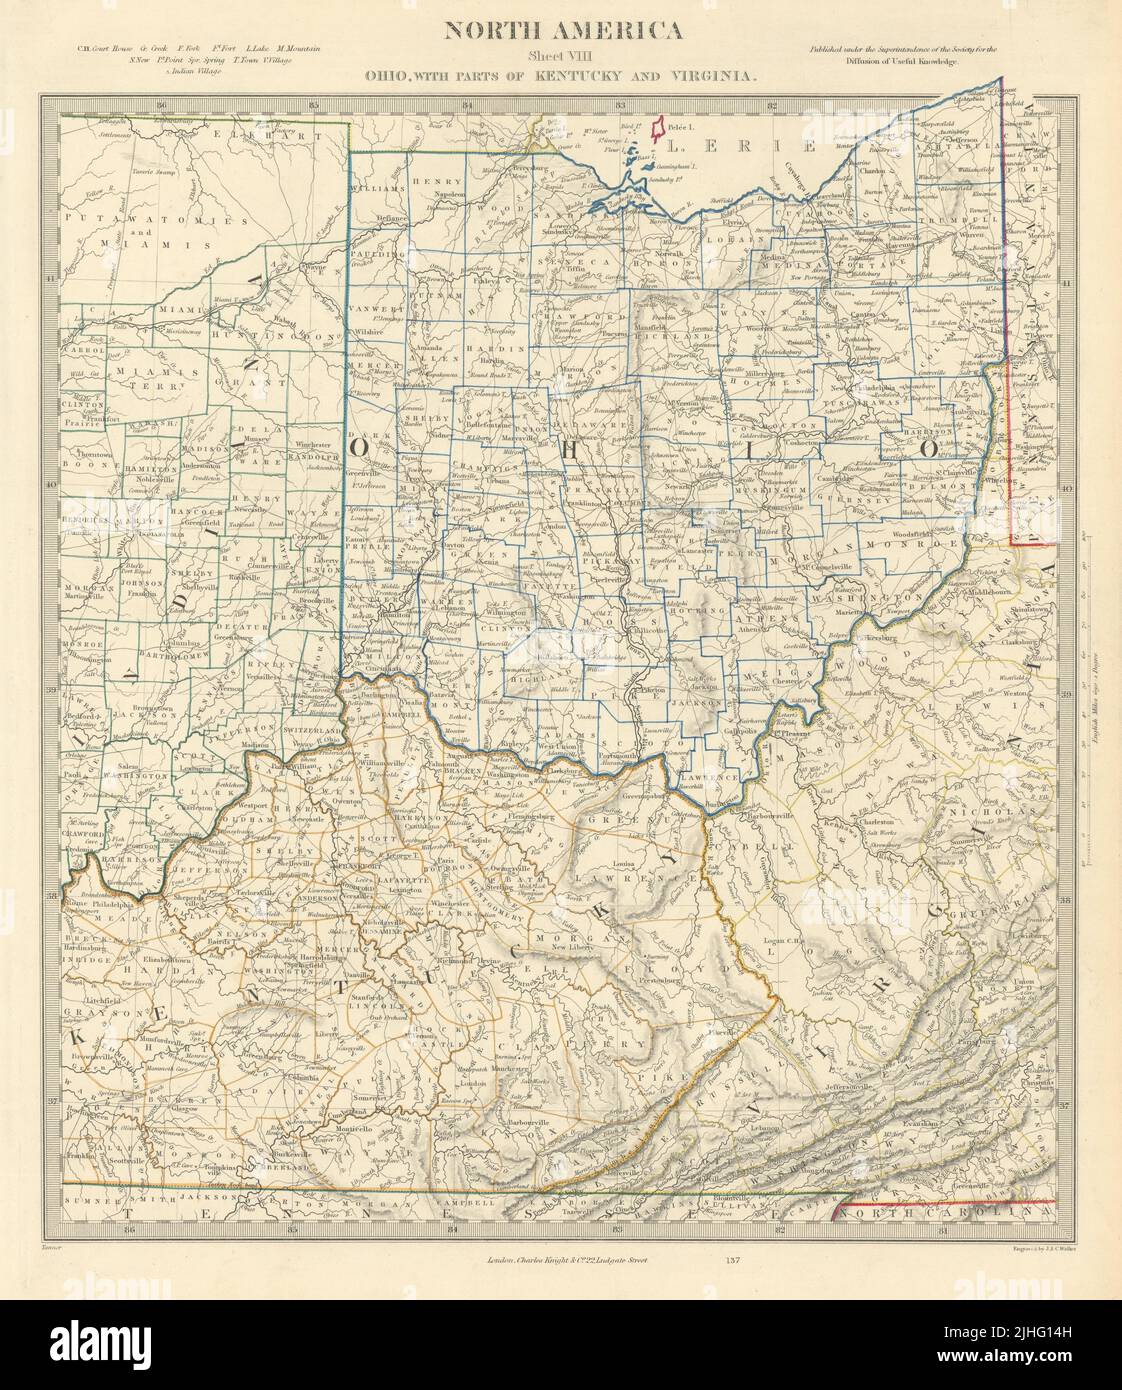 ÉTATS-UNIS. Ohio avec des parties du Kentucky, de la Virginie et de l'Indiana. Comtés. Carte SDUK 1851 Banque D'Images